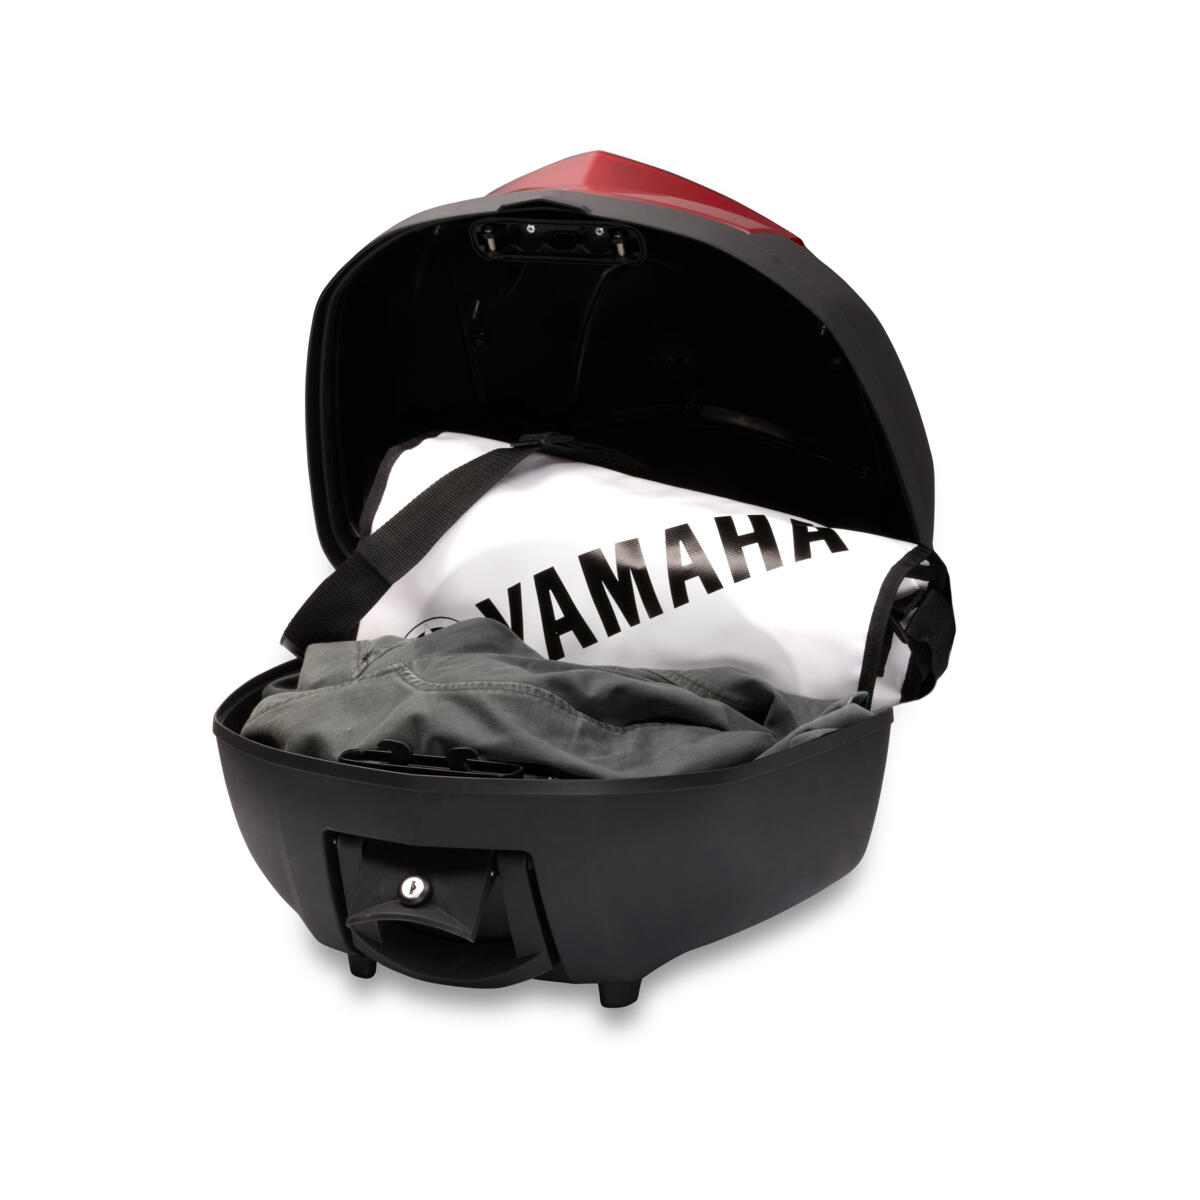 Top-case de qualité pour accroître la capacité de stockage de votre Yamaha.